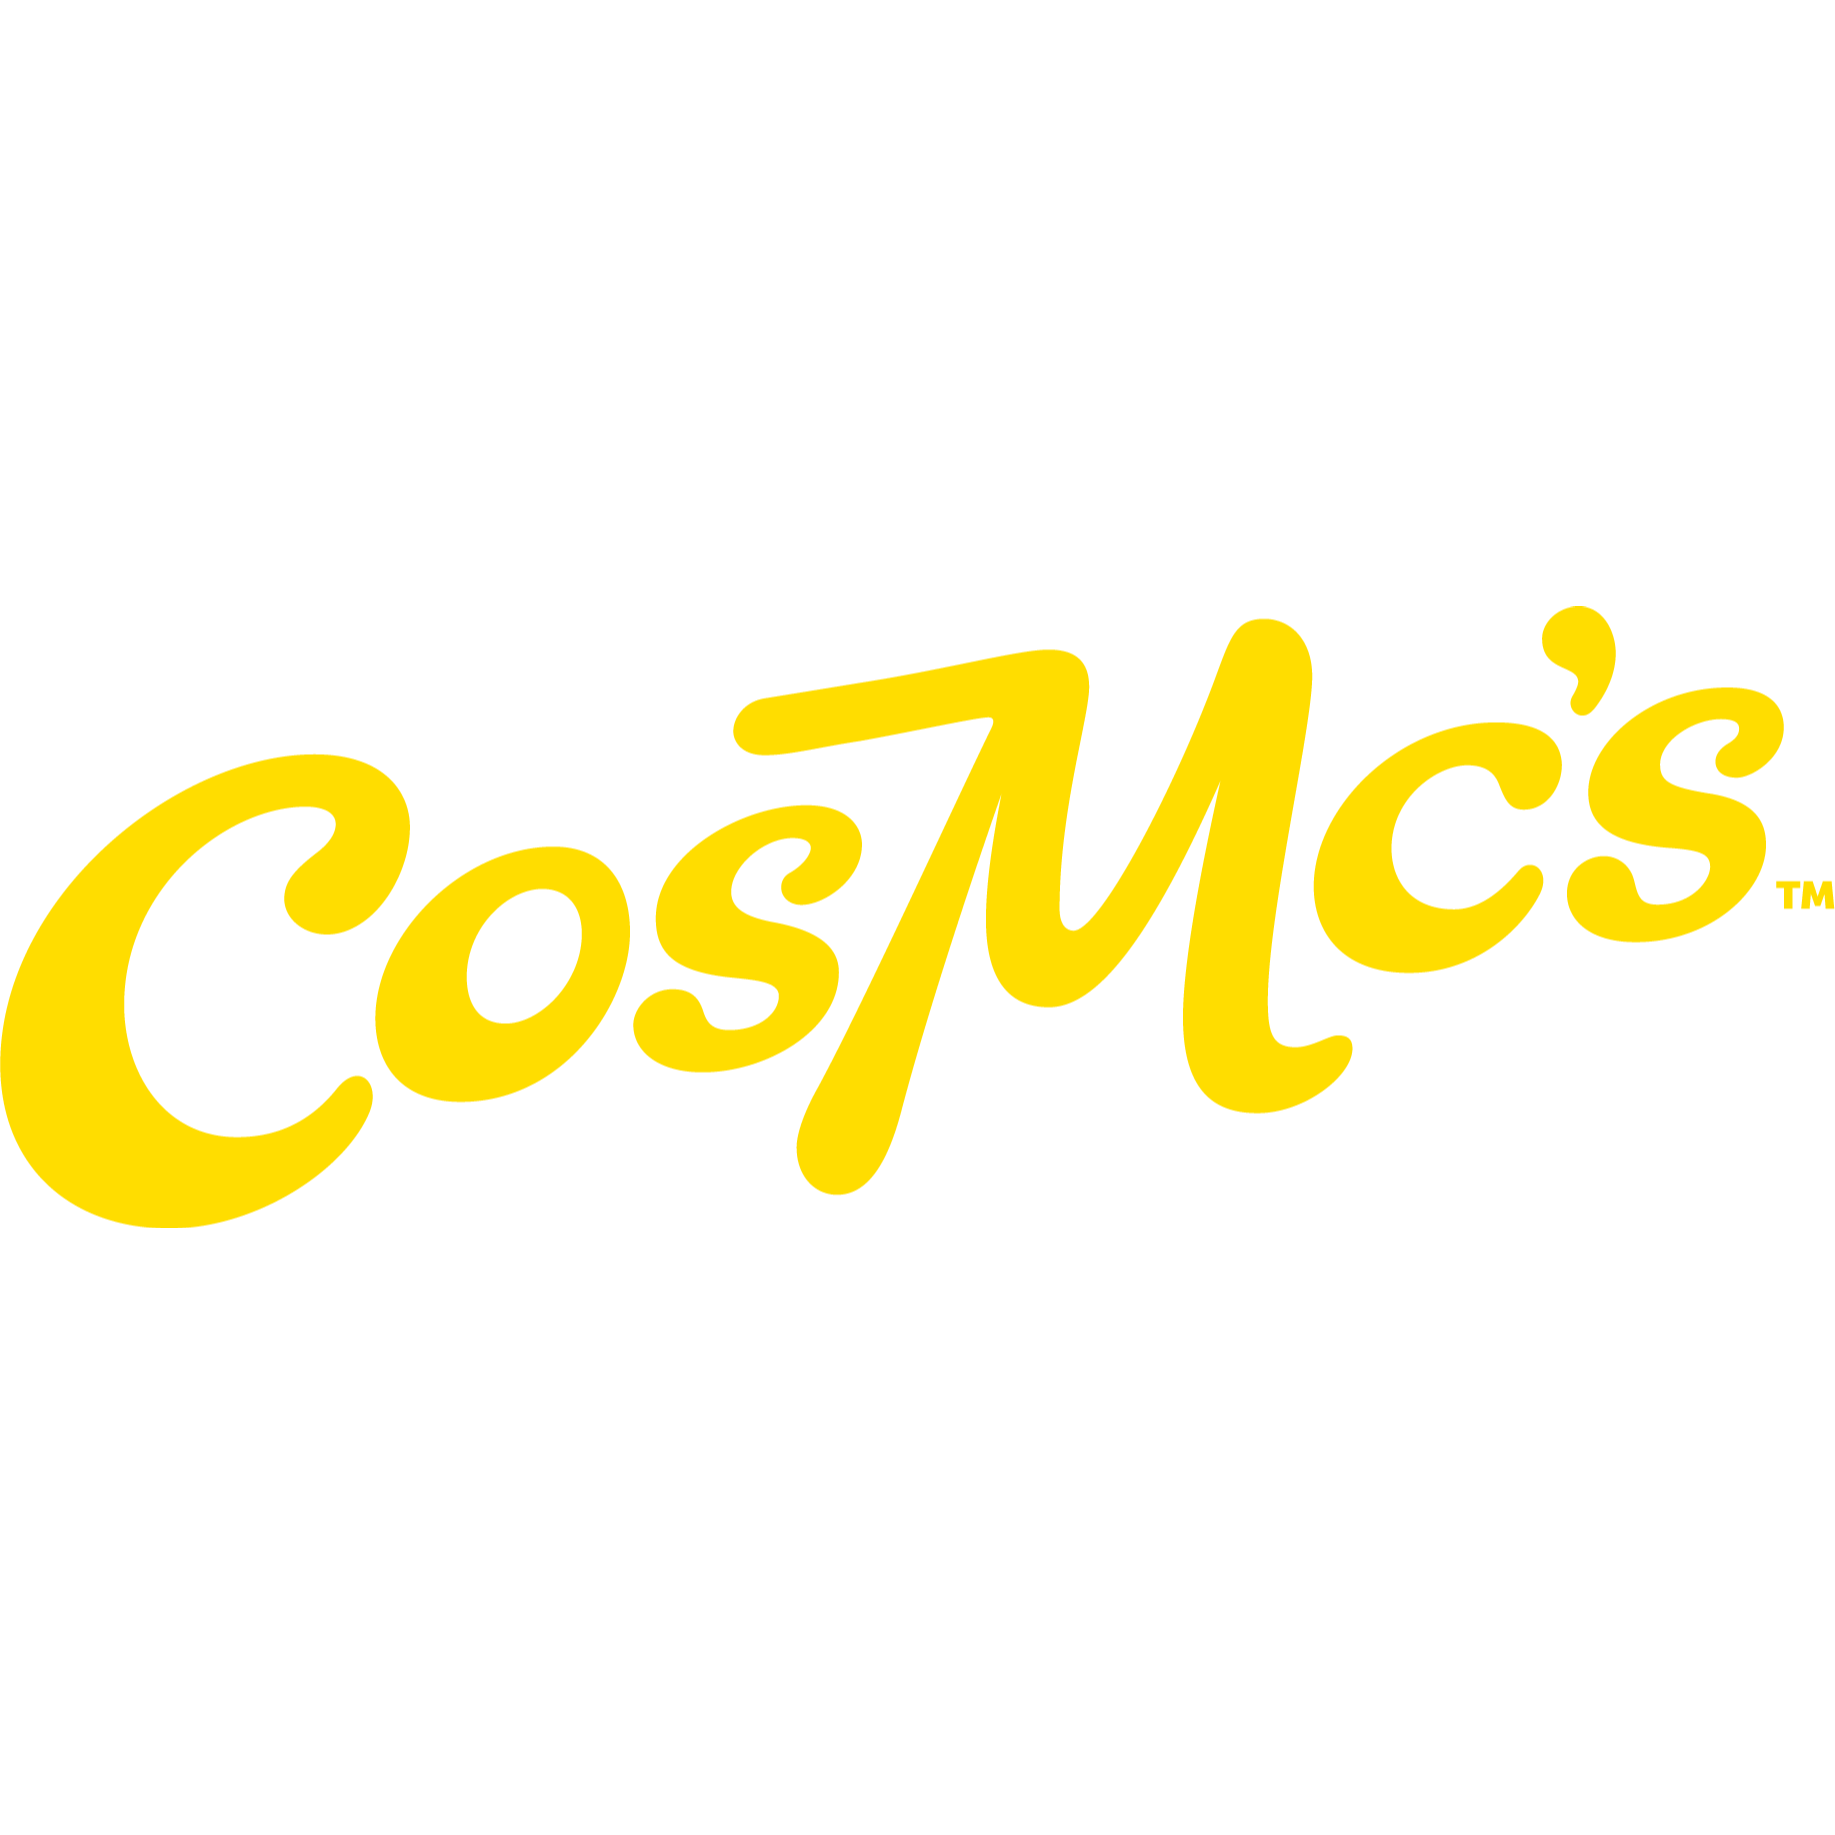 CosMc's